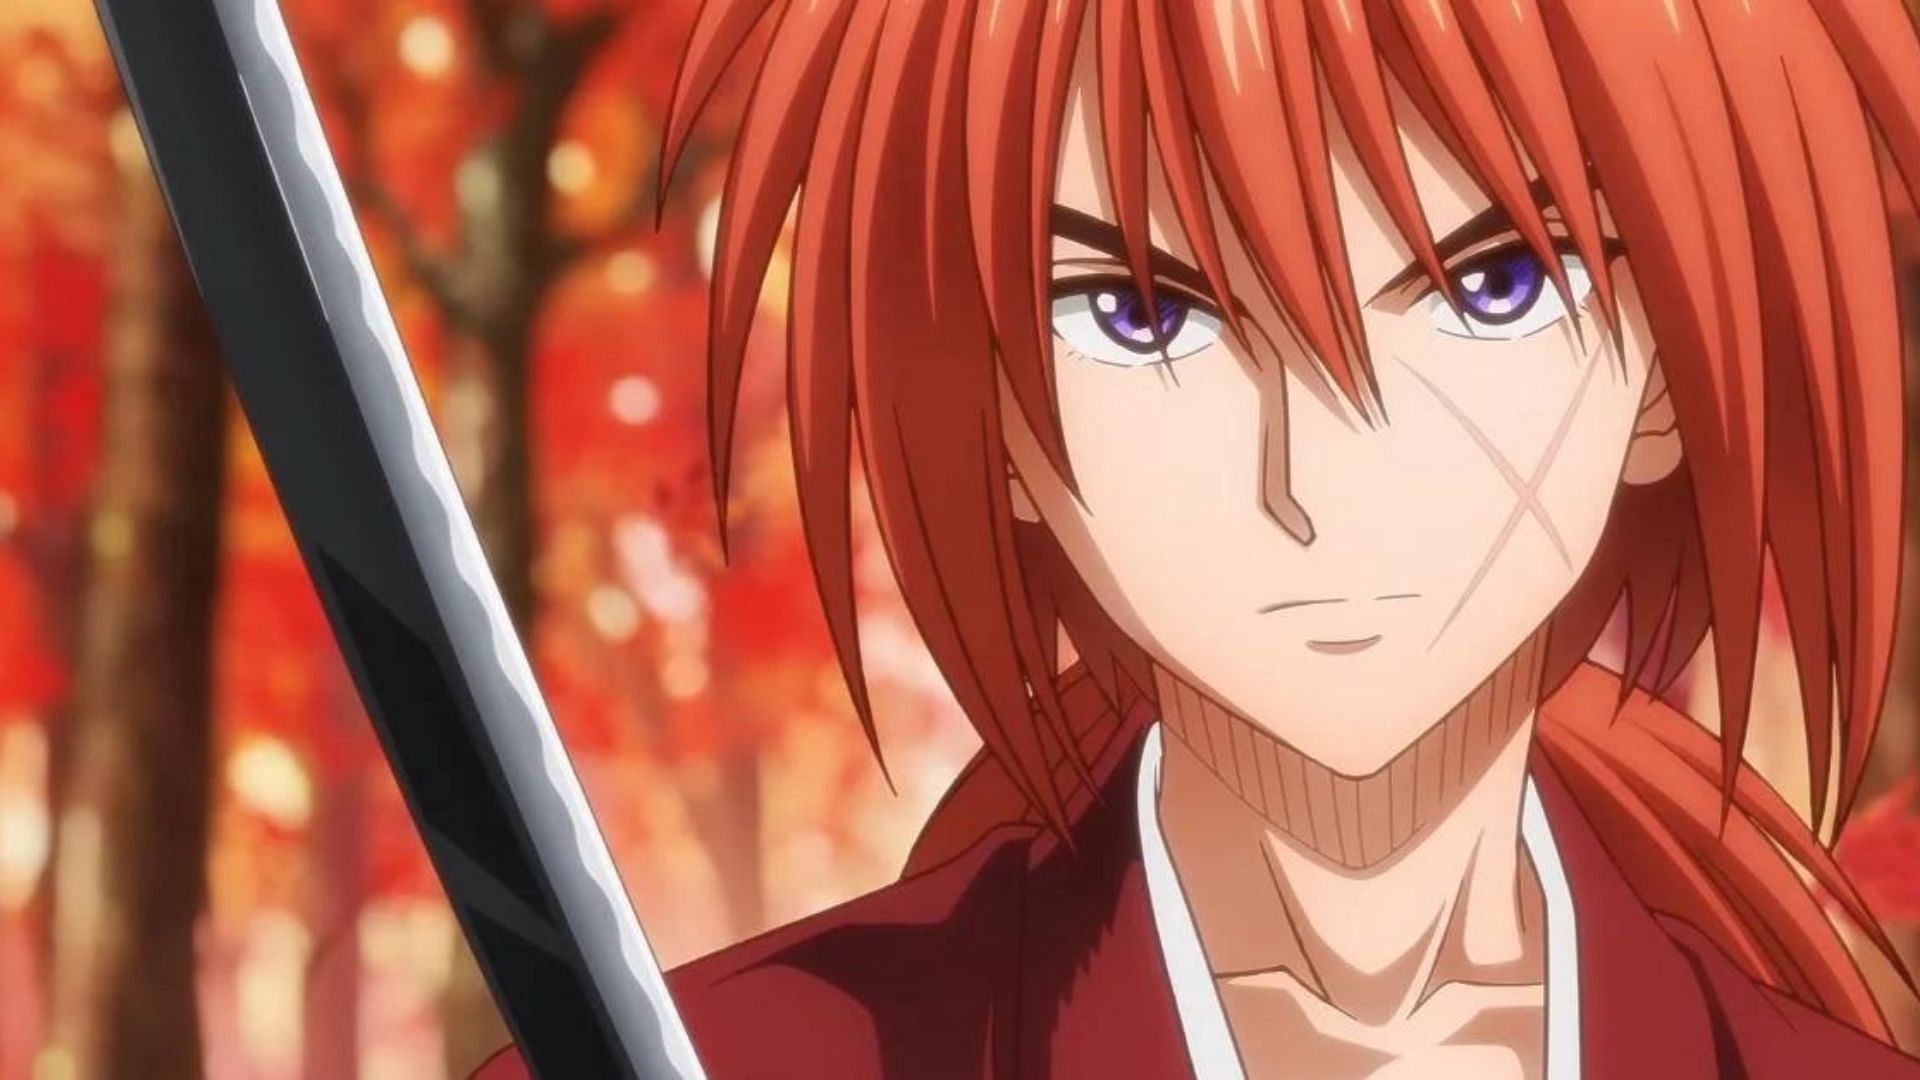 Kenshin Himura as shown in anime (Image via Studio Deen)